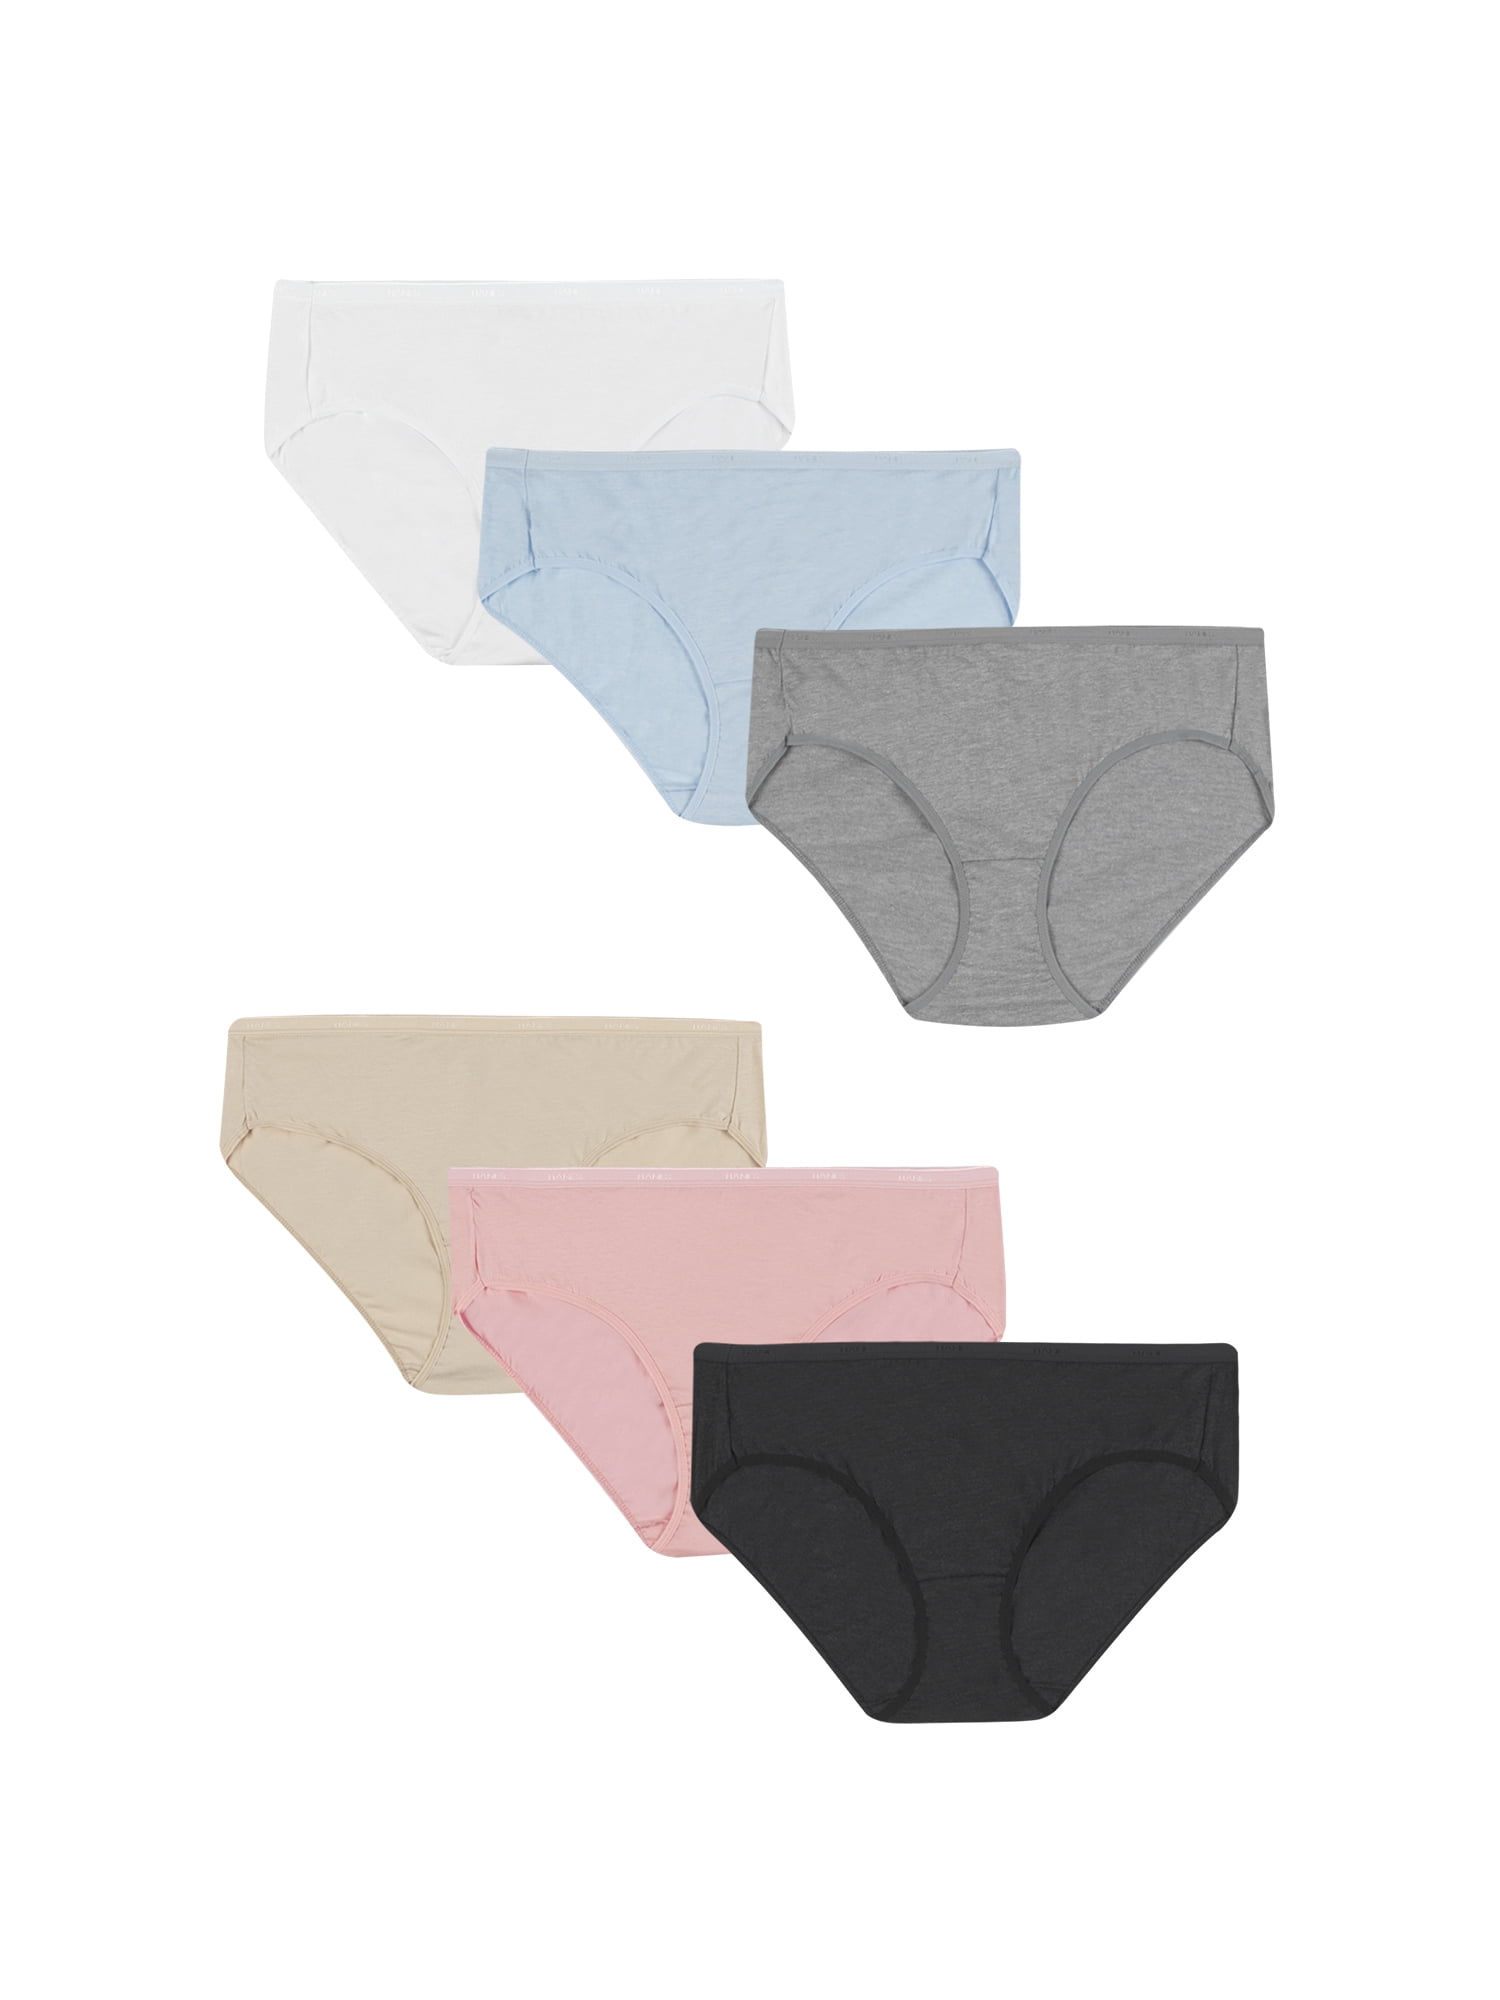 Hanes Women's Signature Cotton Hipster Underwear, 6-Pack - Walmart.com